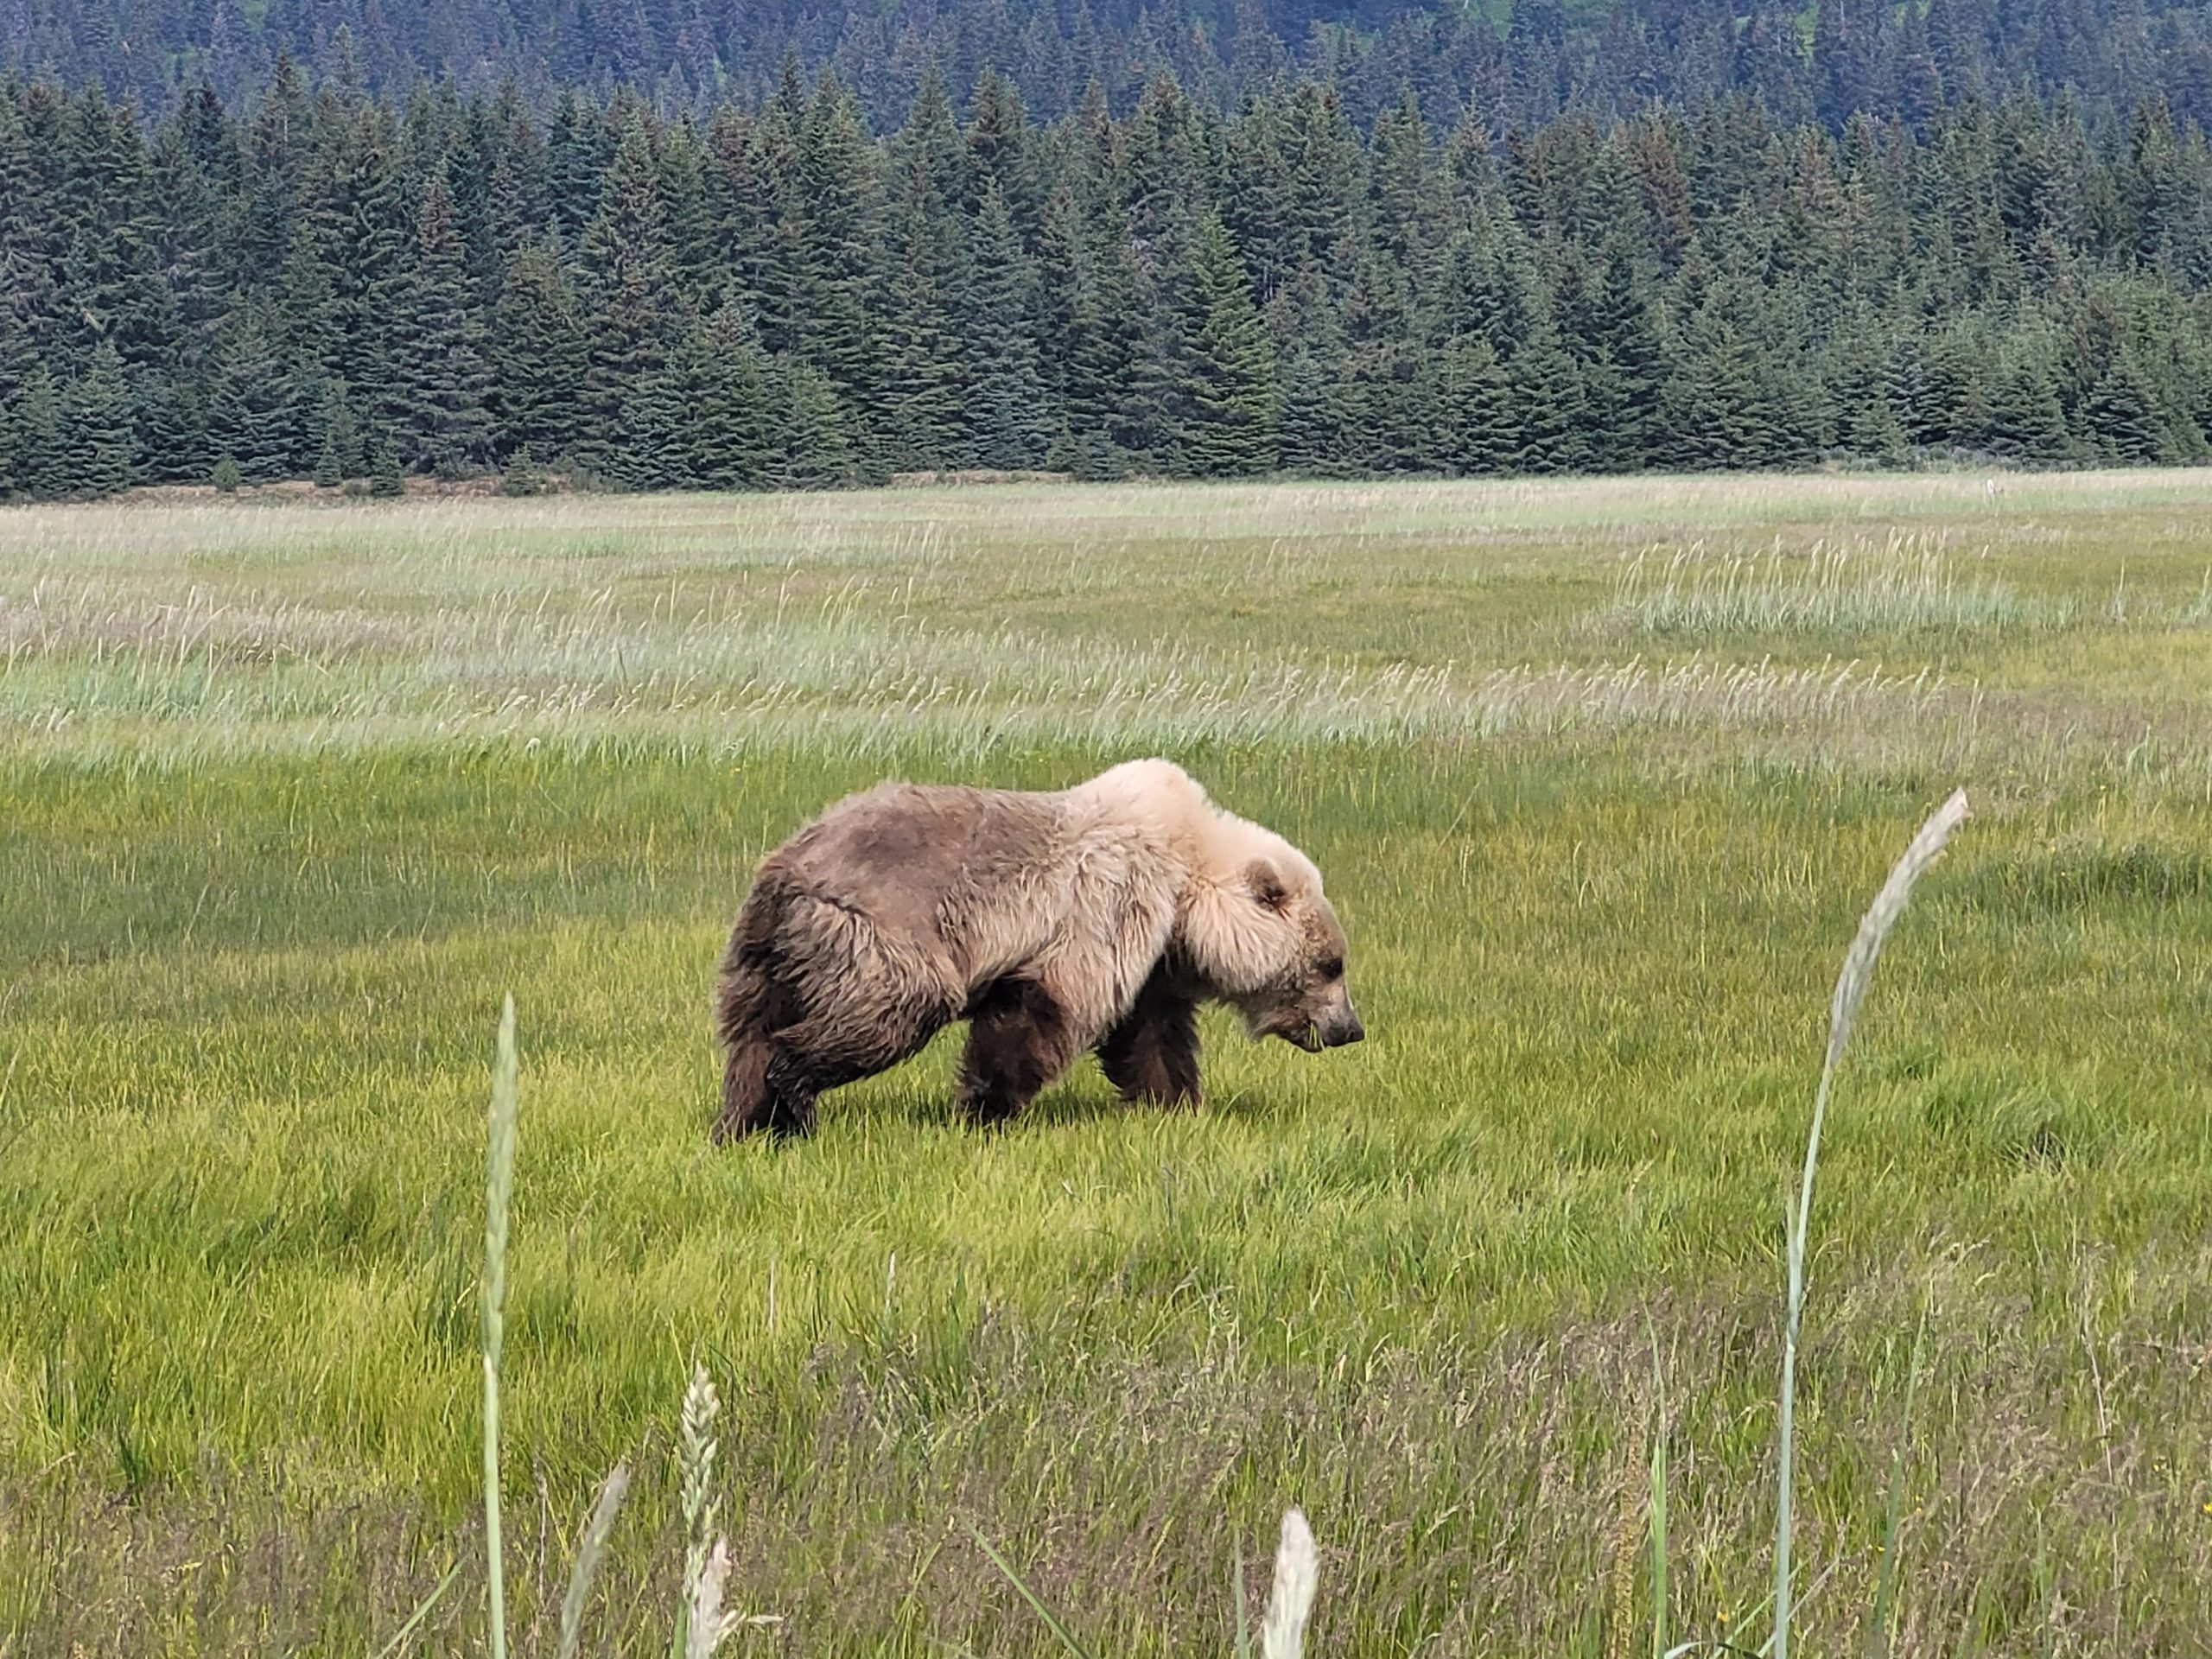 TRIP REPORT: 6/26/22 Alaskan Bear Viewing Experience